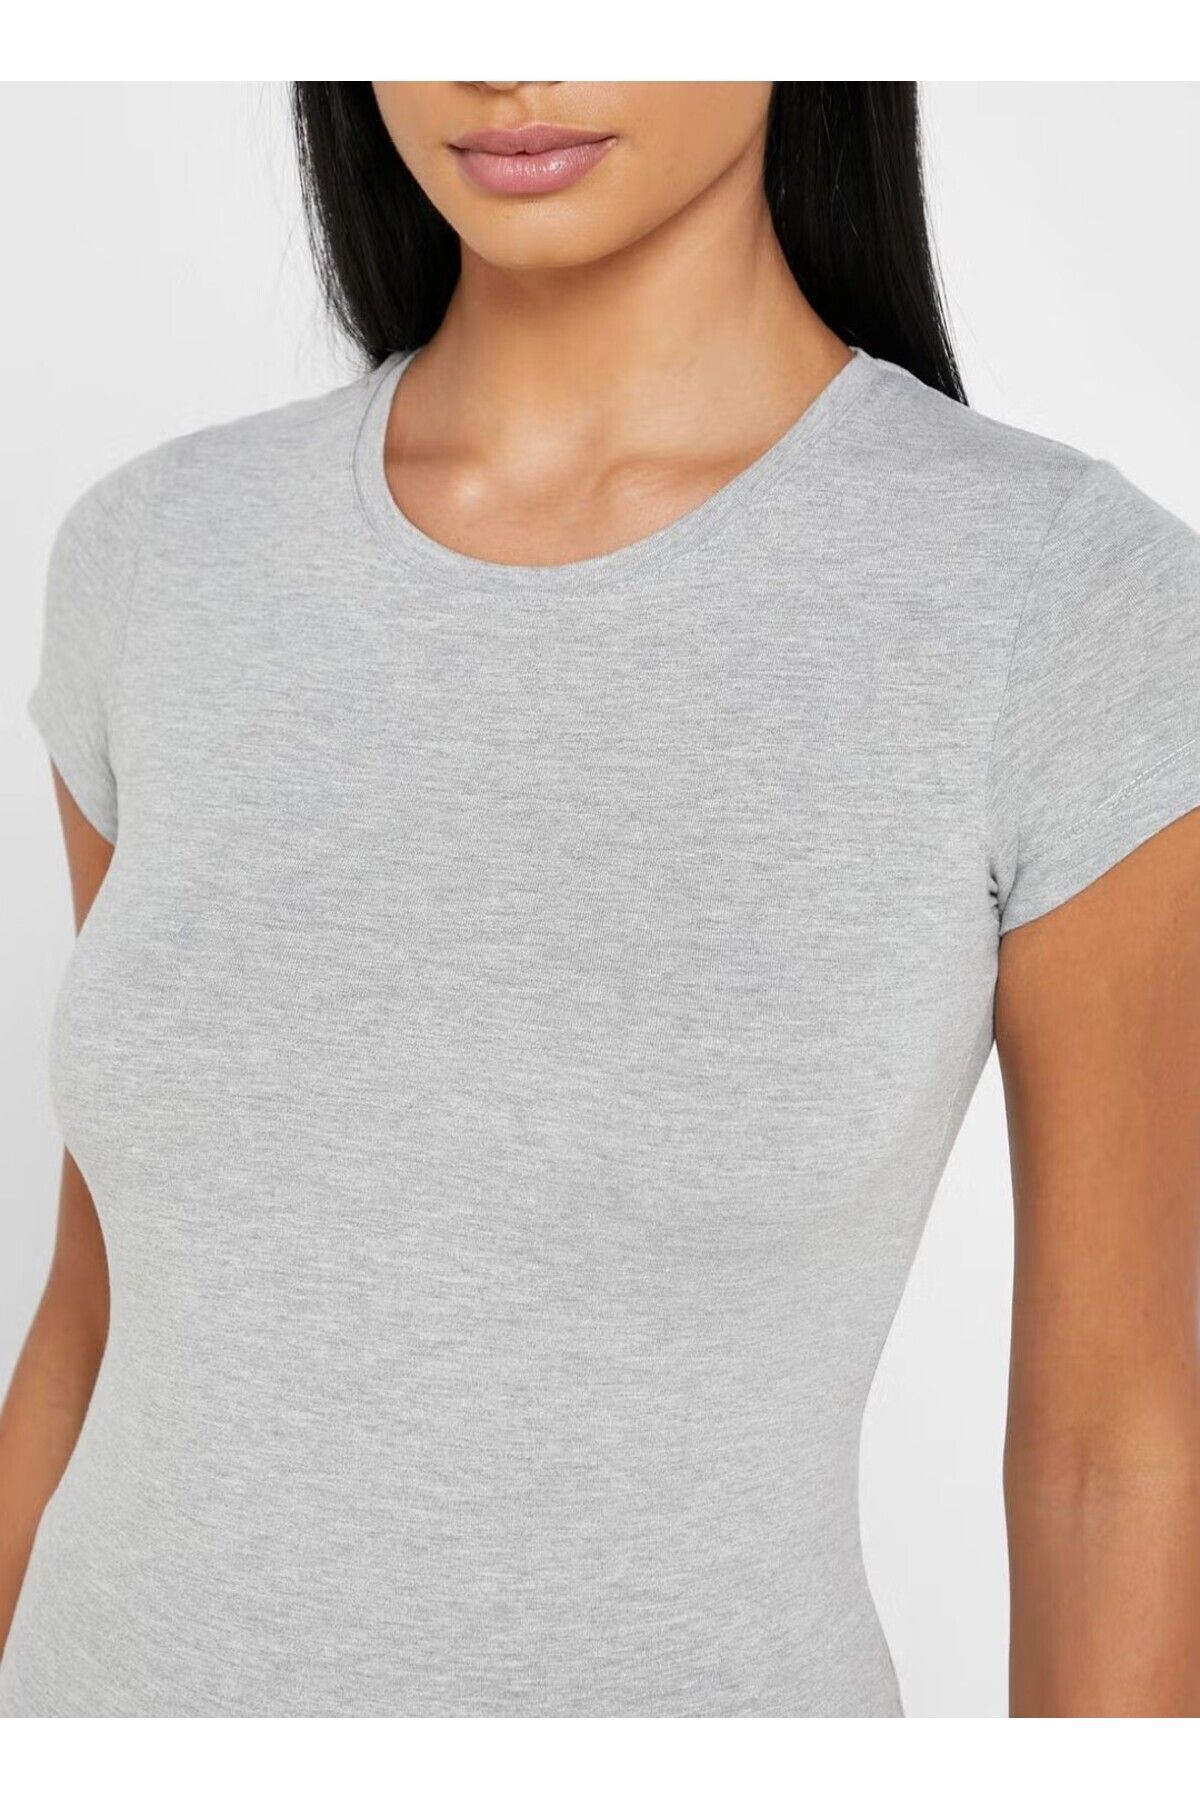 U.S. Polo Assn. Kadın Pamuklu İnce Gri Yuvarlak Yaka T-shirt